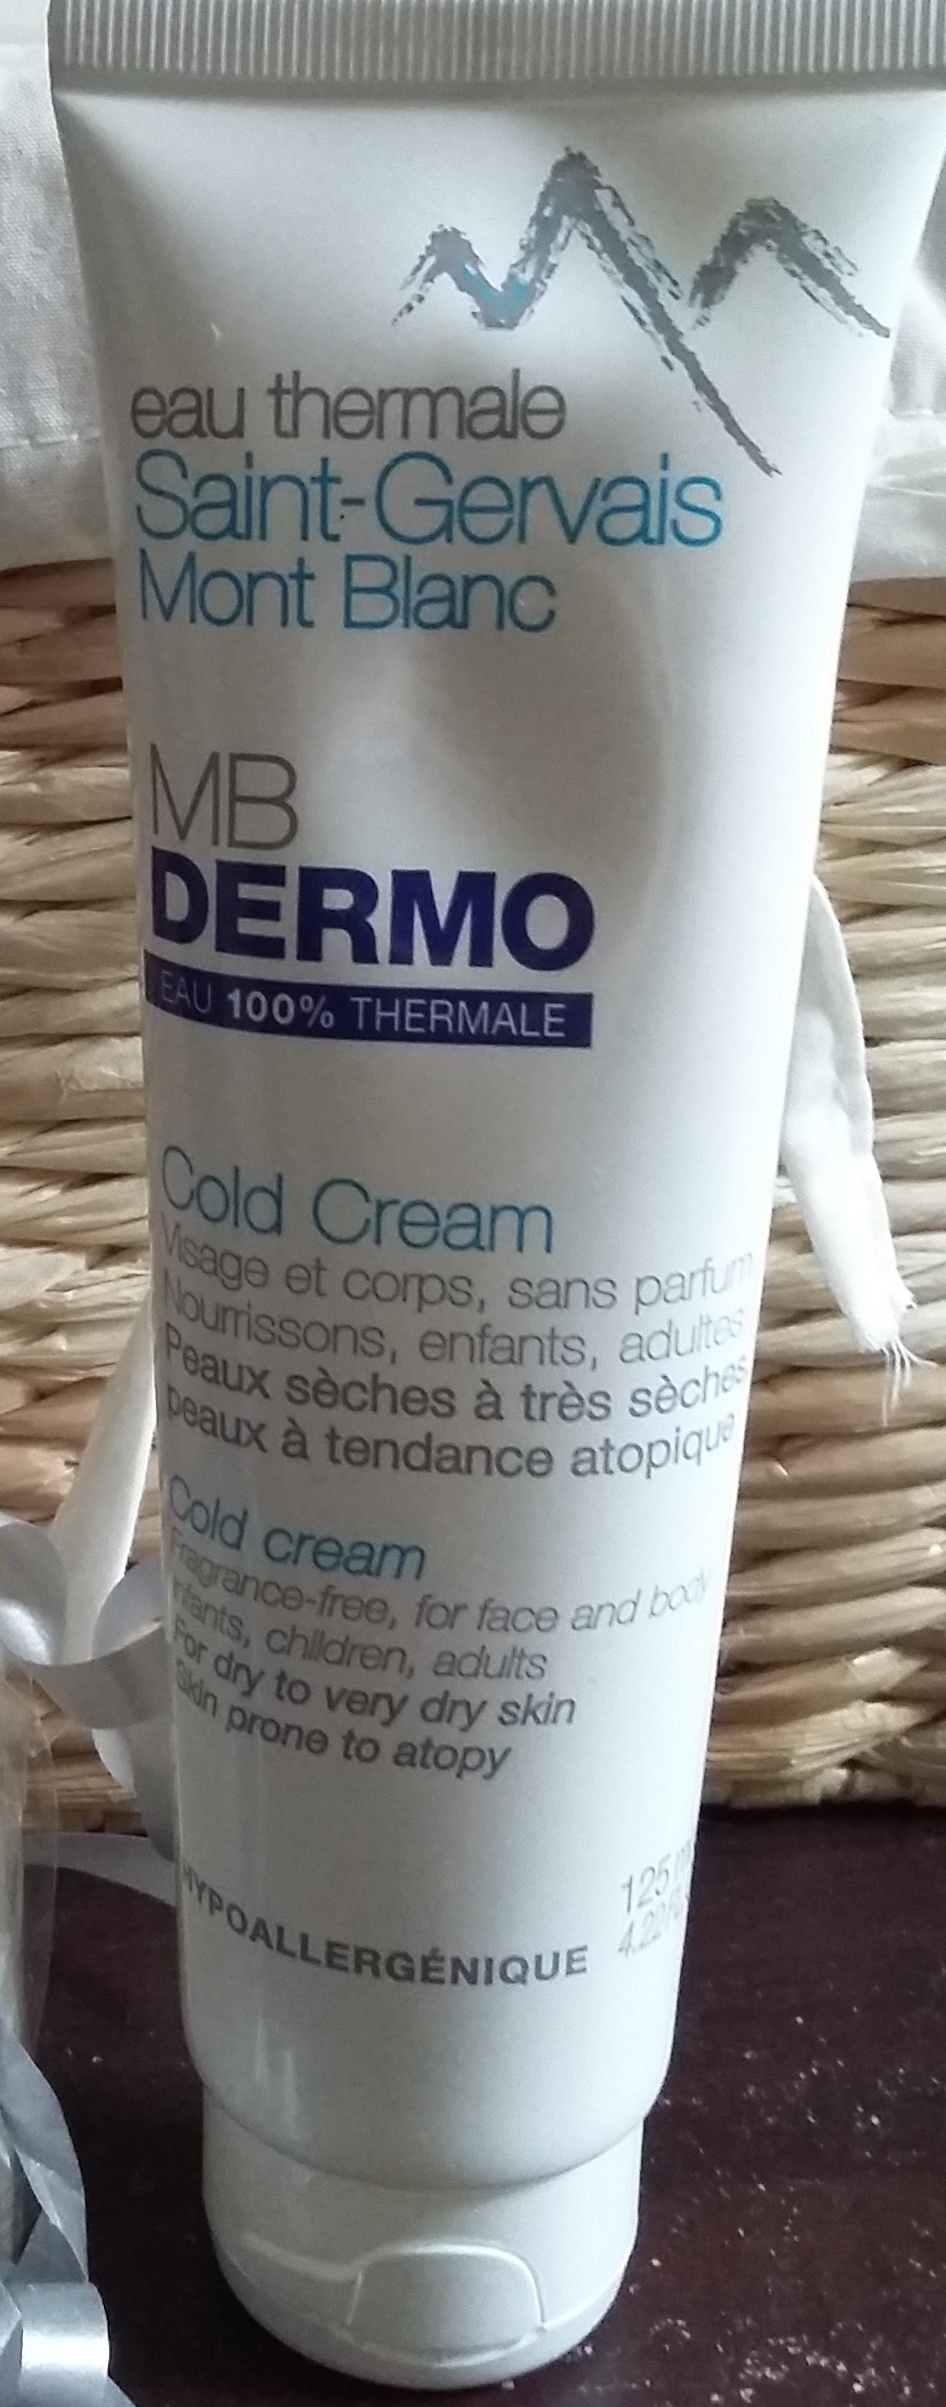 MB dermo cold crème Saint-Gervais Mont Blanc - Product - fr